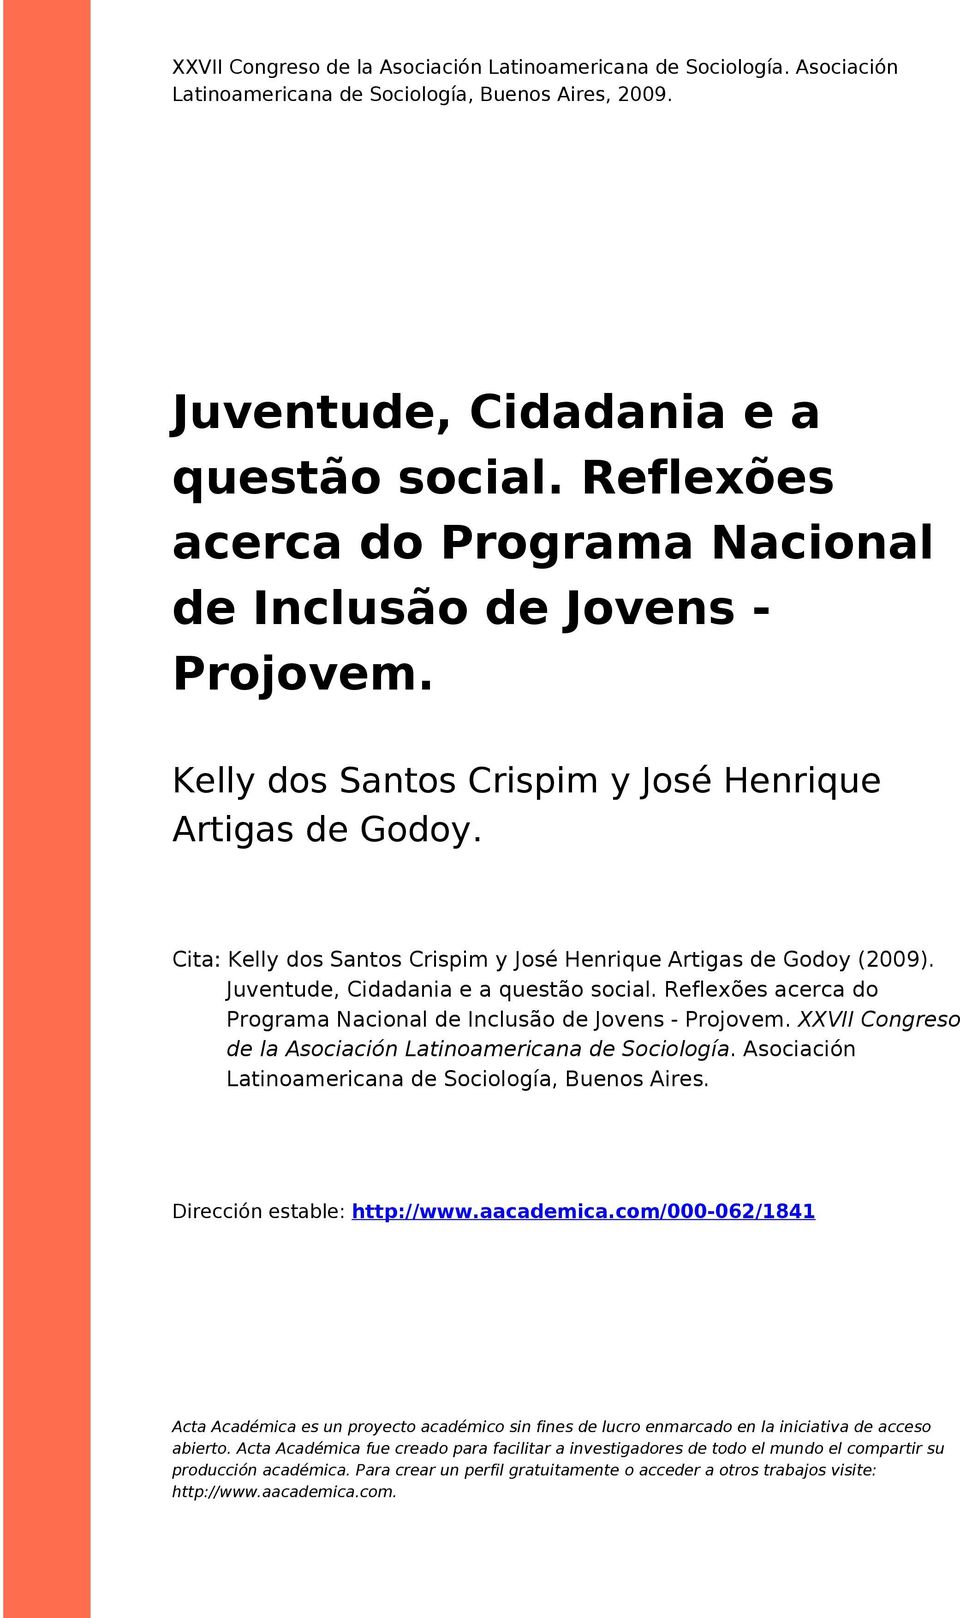 Cita: Kelly dos Santos Crispim y José Henrique Artigas de Godoy (2009). Juventude, Cidadania e a questão social. Reflexões acerca do Programa Nacional de Inclusão de Jovens - Projovem.